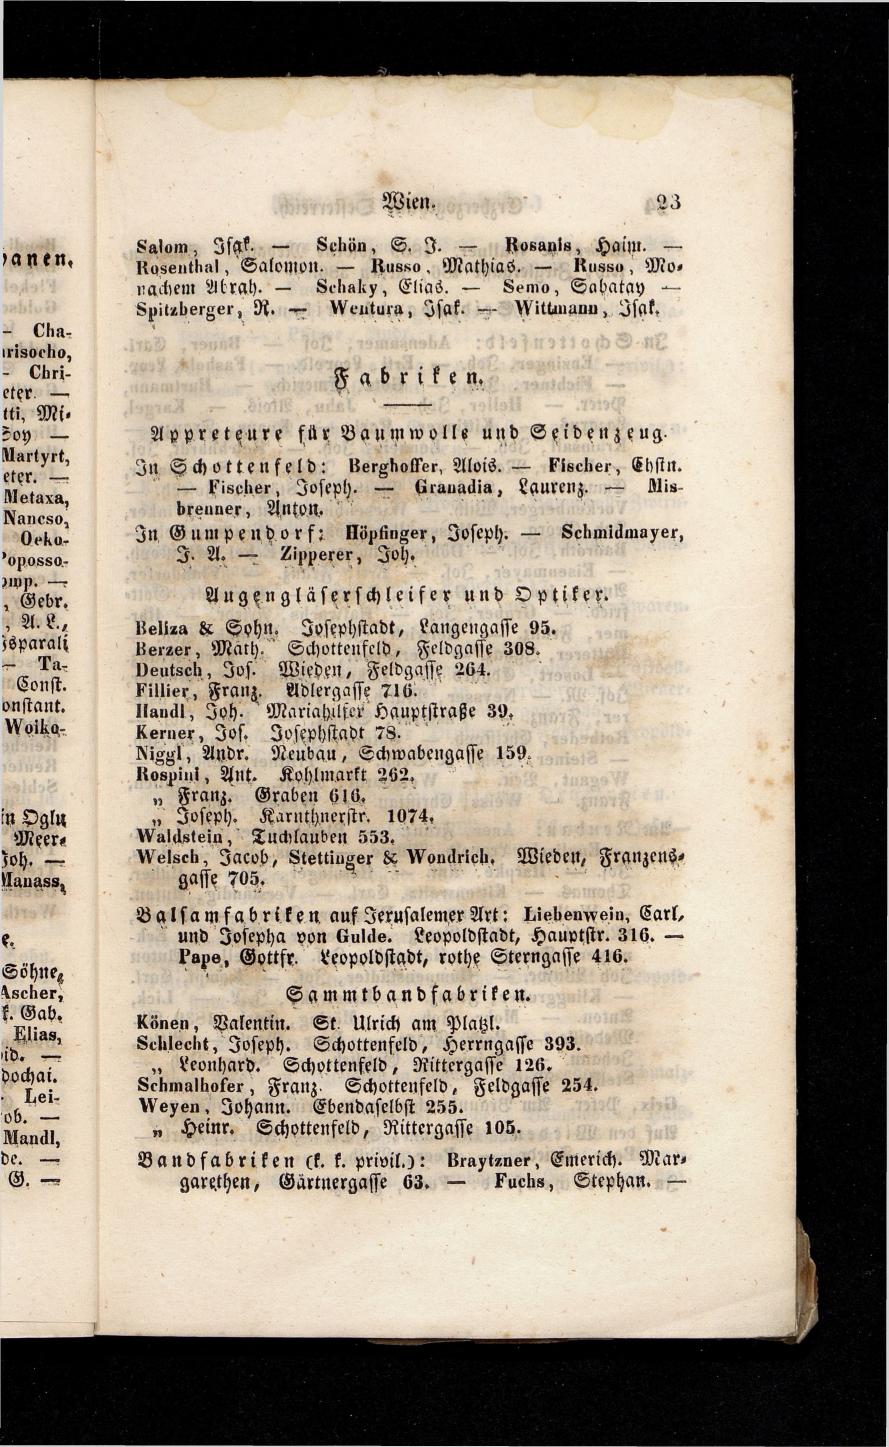 Grosses Adressbuch der Kaufleute. No. 13. Oesterreich ober u. unter der Enns 1844 - Seite 27